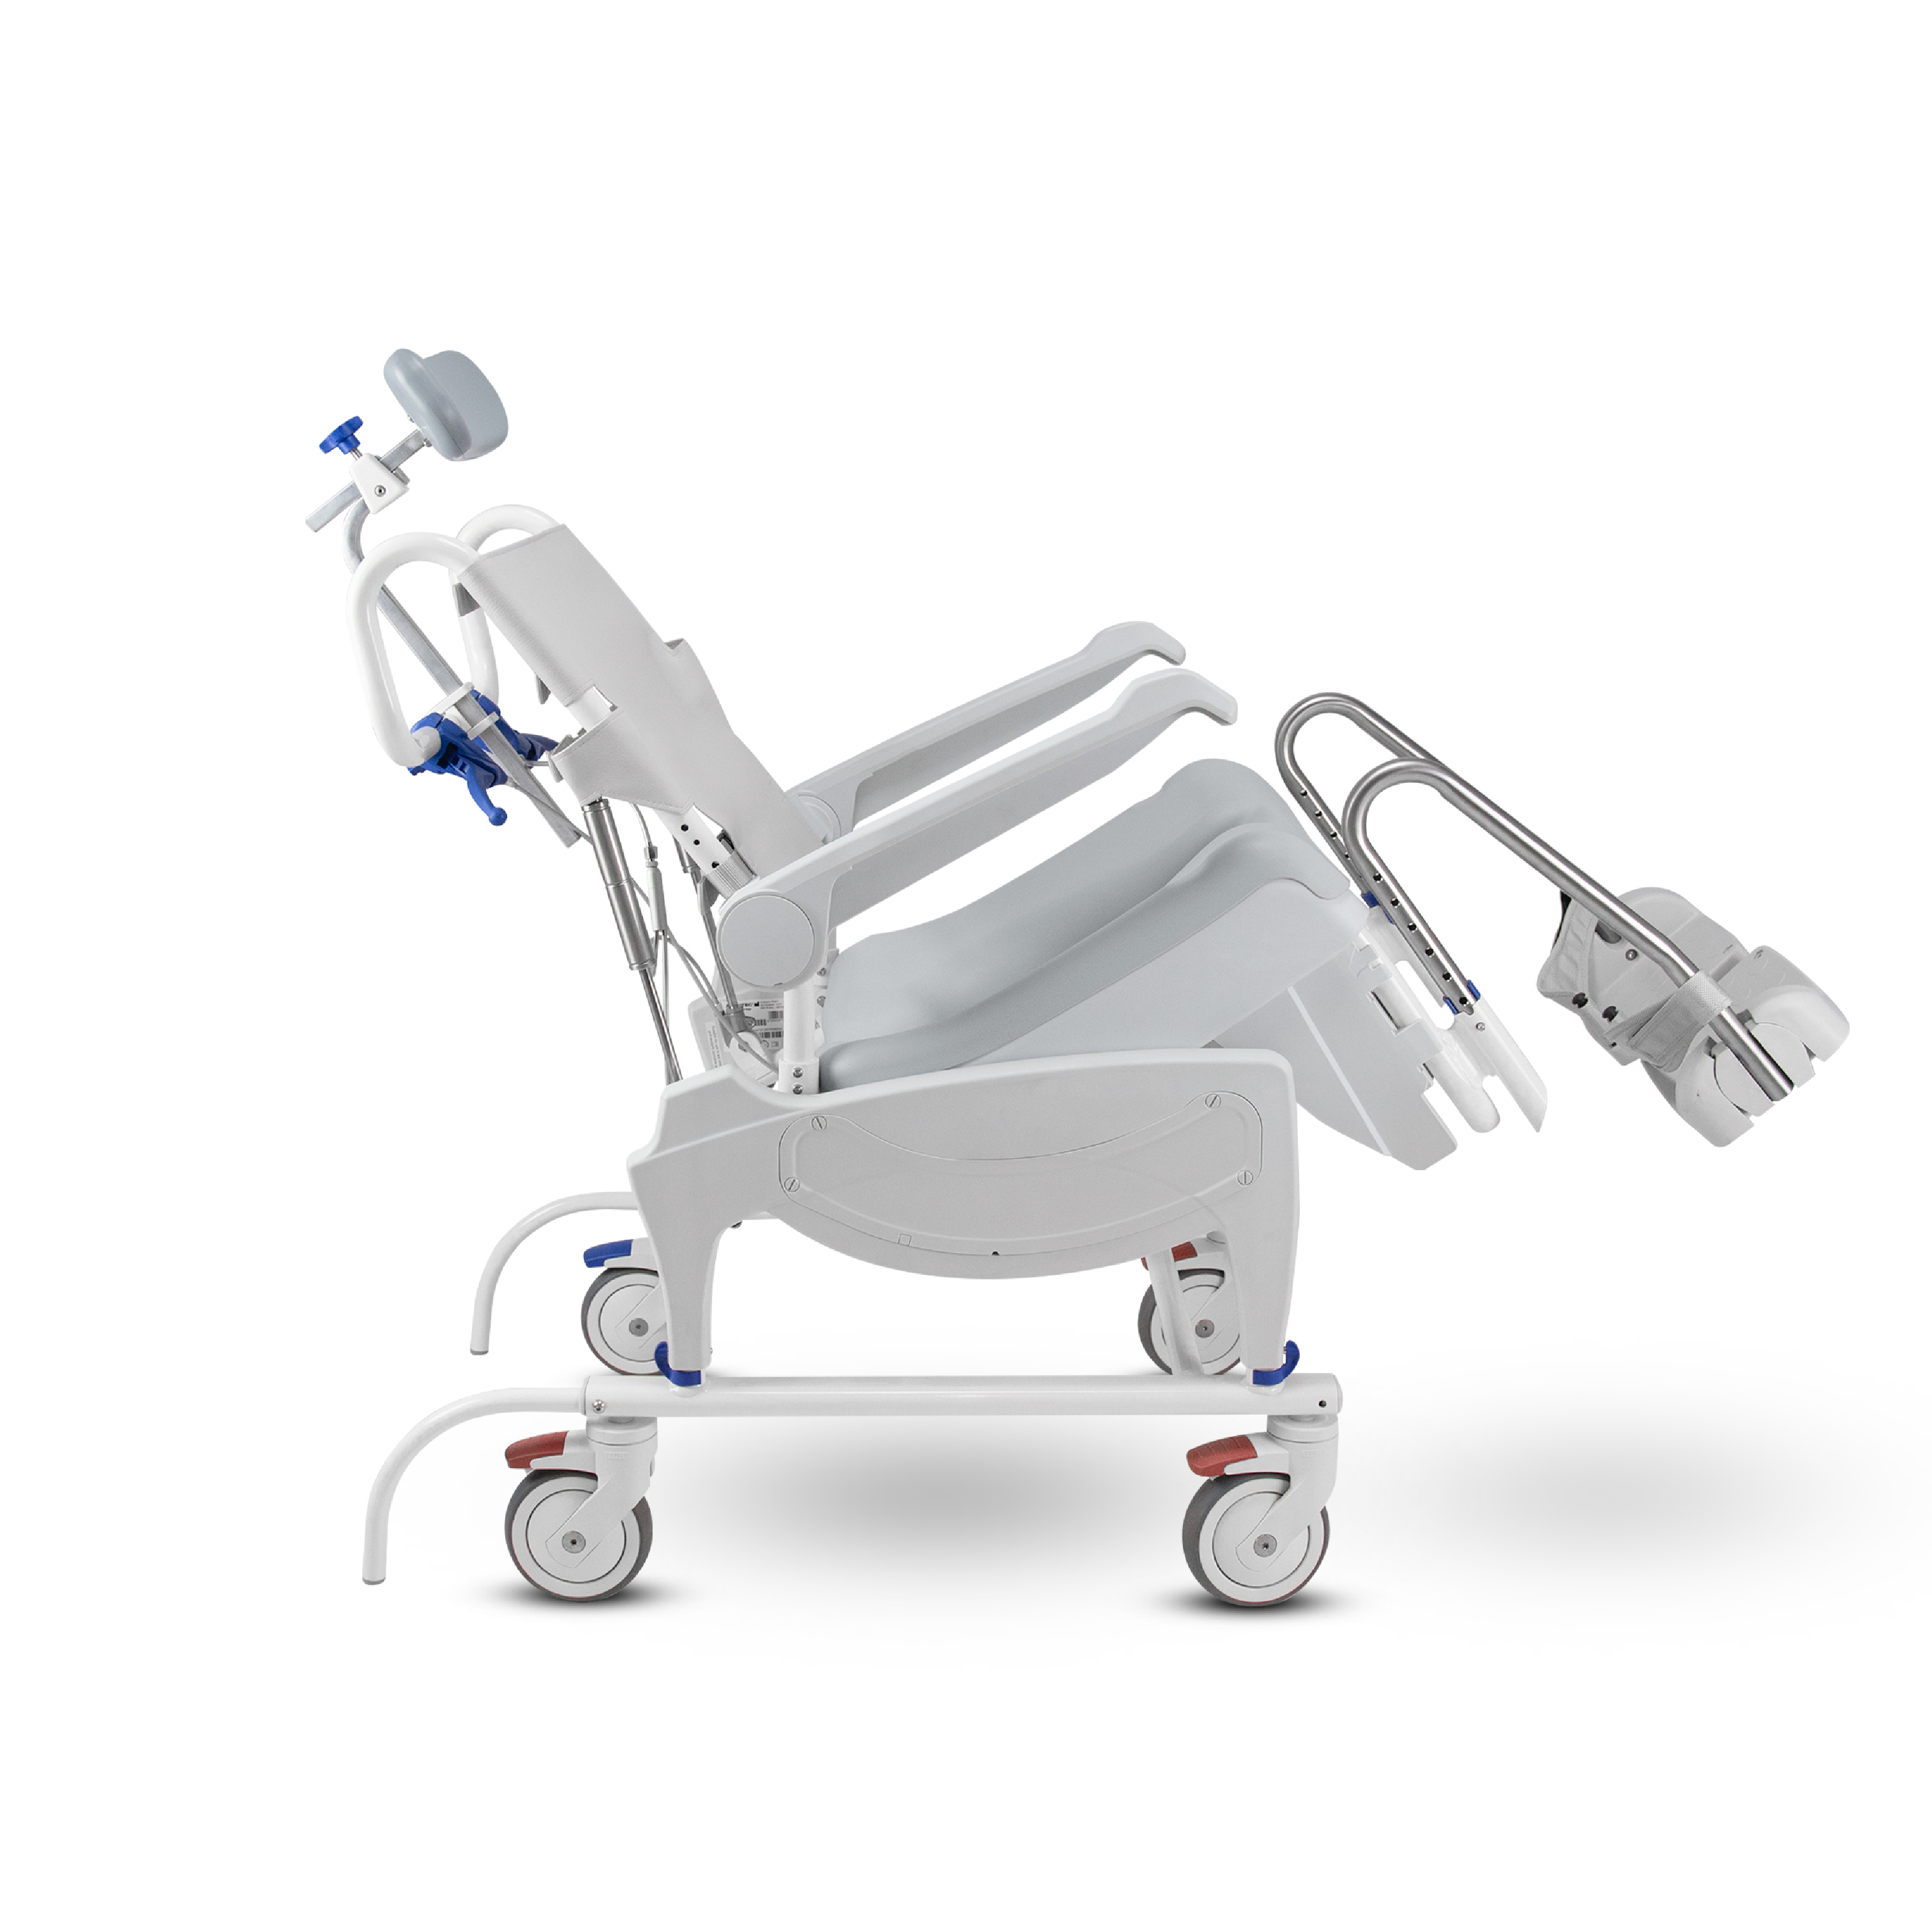 เก้าอี้รถเข็นผู้สูงอายุ Multifunction Smart Chair มีพนักพิงศีรษะ ปรับเอนหลังได้ 0-35 องศา สำหรับใช้งานอเนกประสงค์ภายในบ้าน